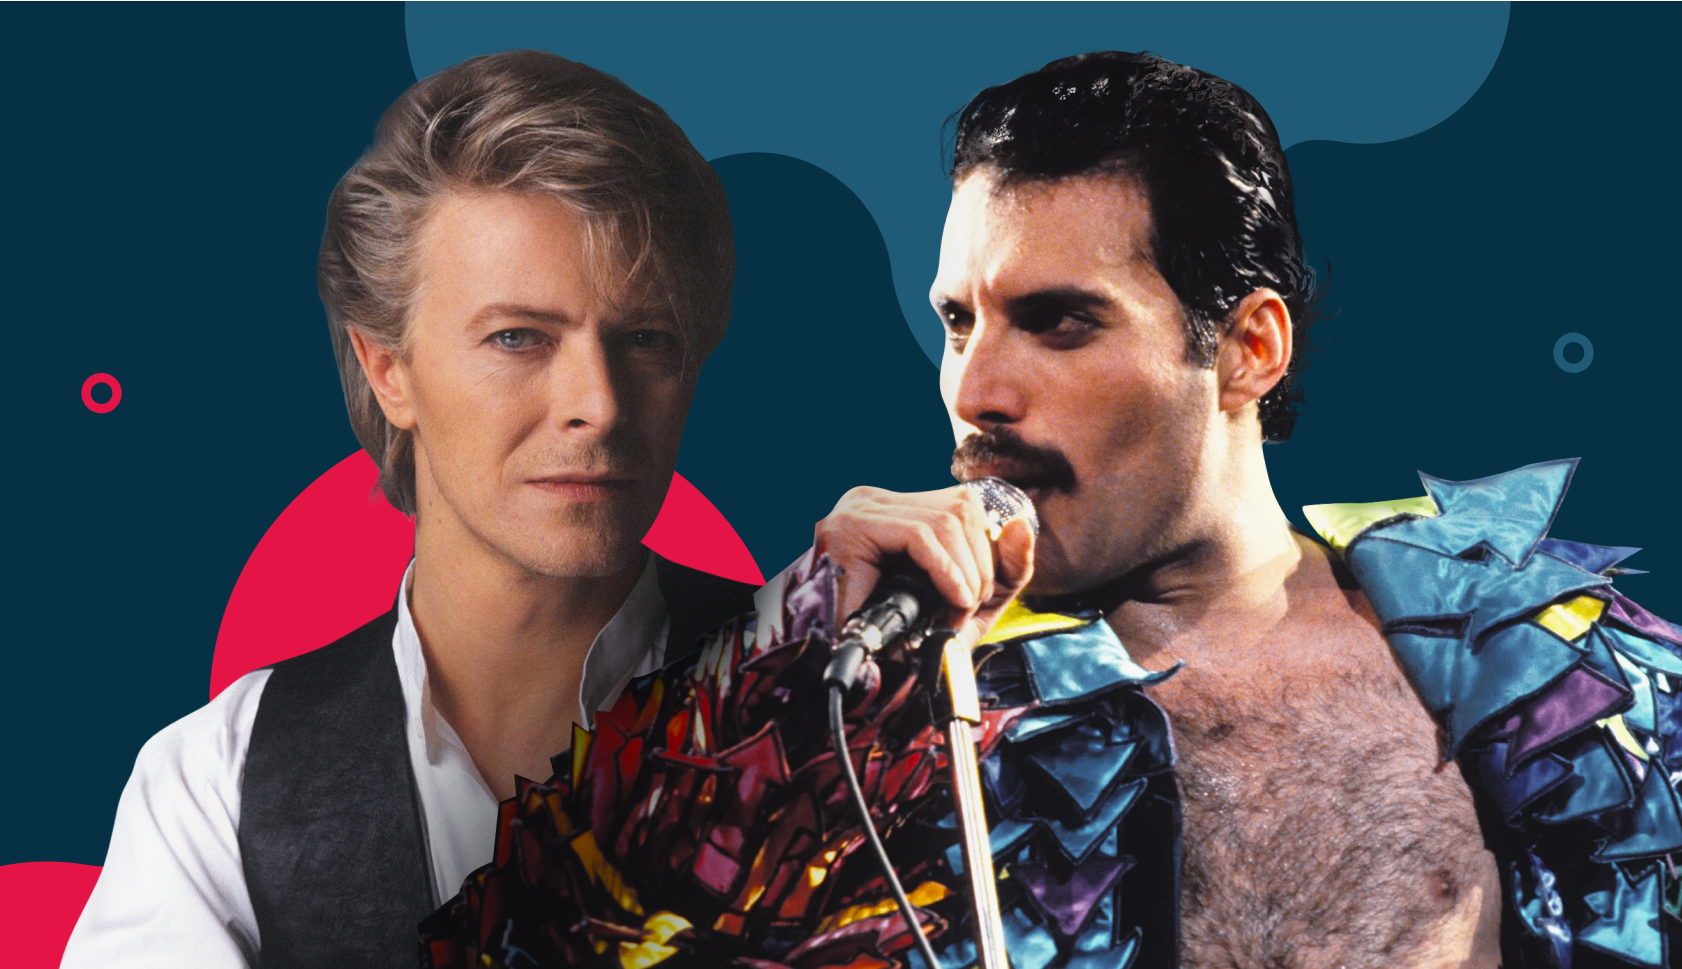 Under Pressure, do Queen: o significado do hit com David Bowie